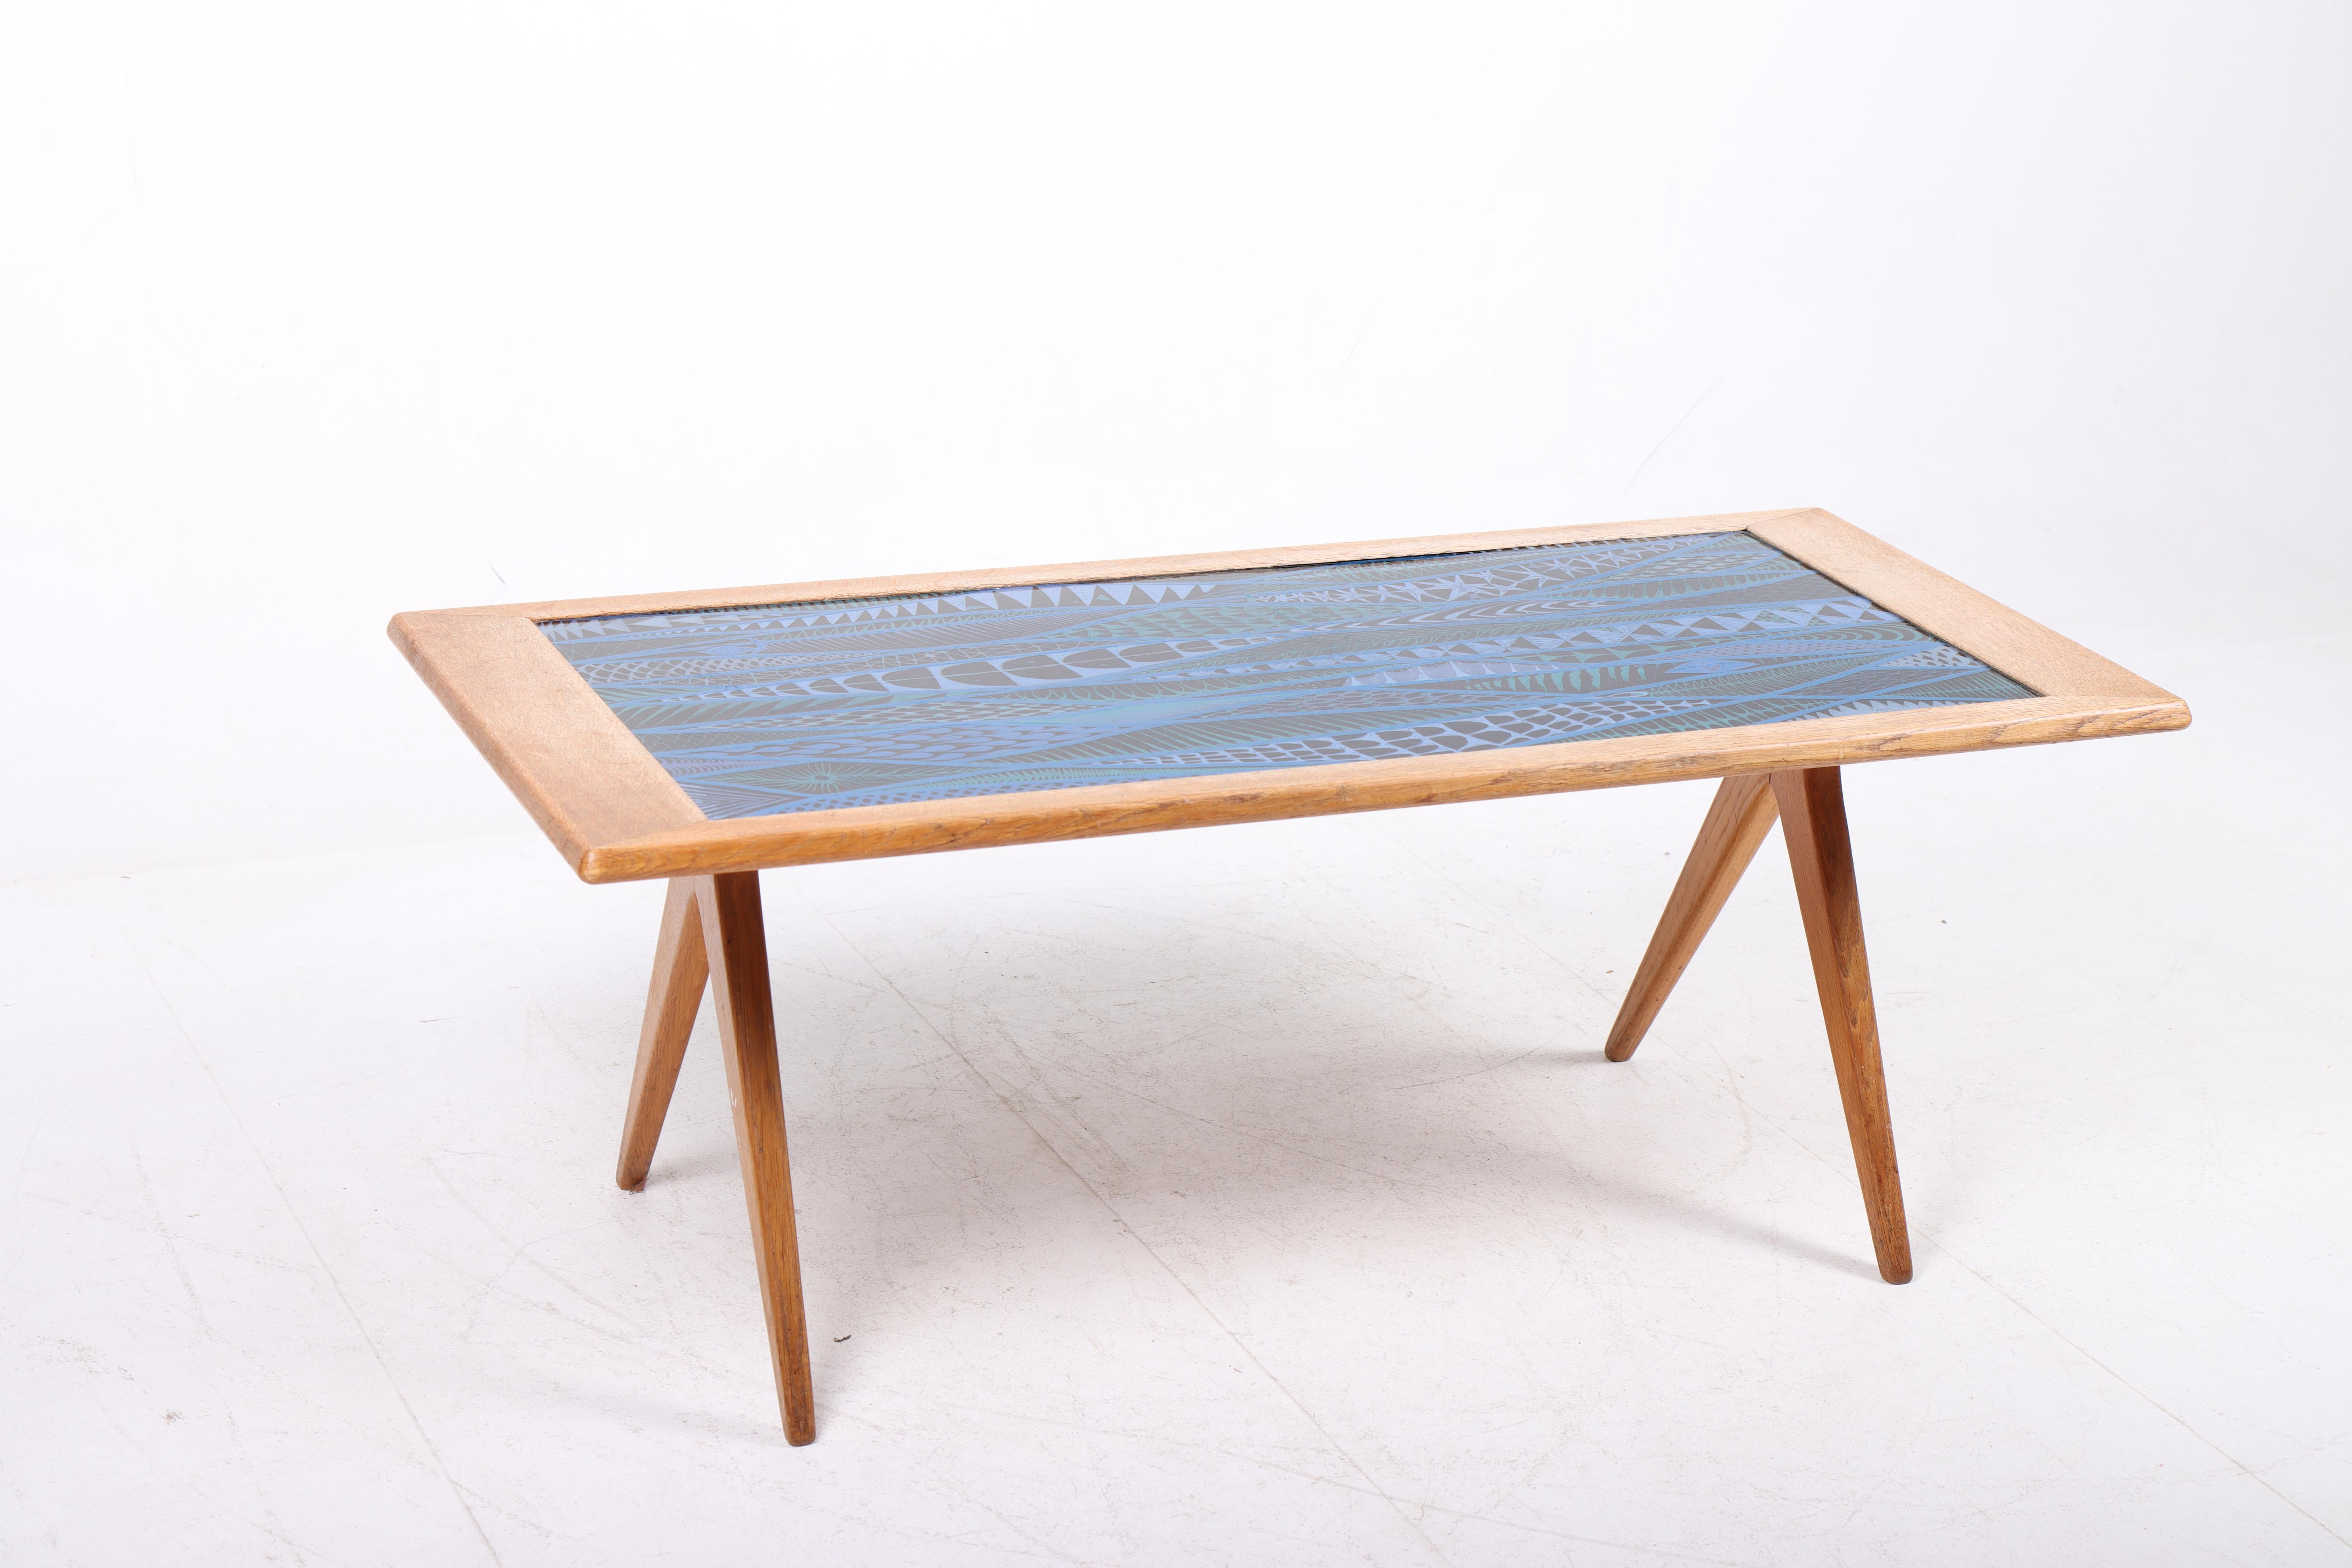 Scandinavian Modern Low Table in Oak and Enamel by Stig Lindberg, 1950s